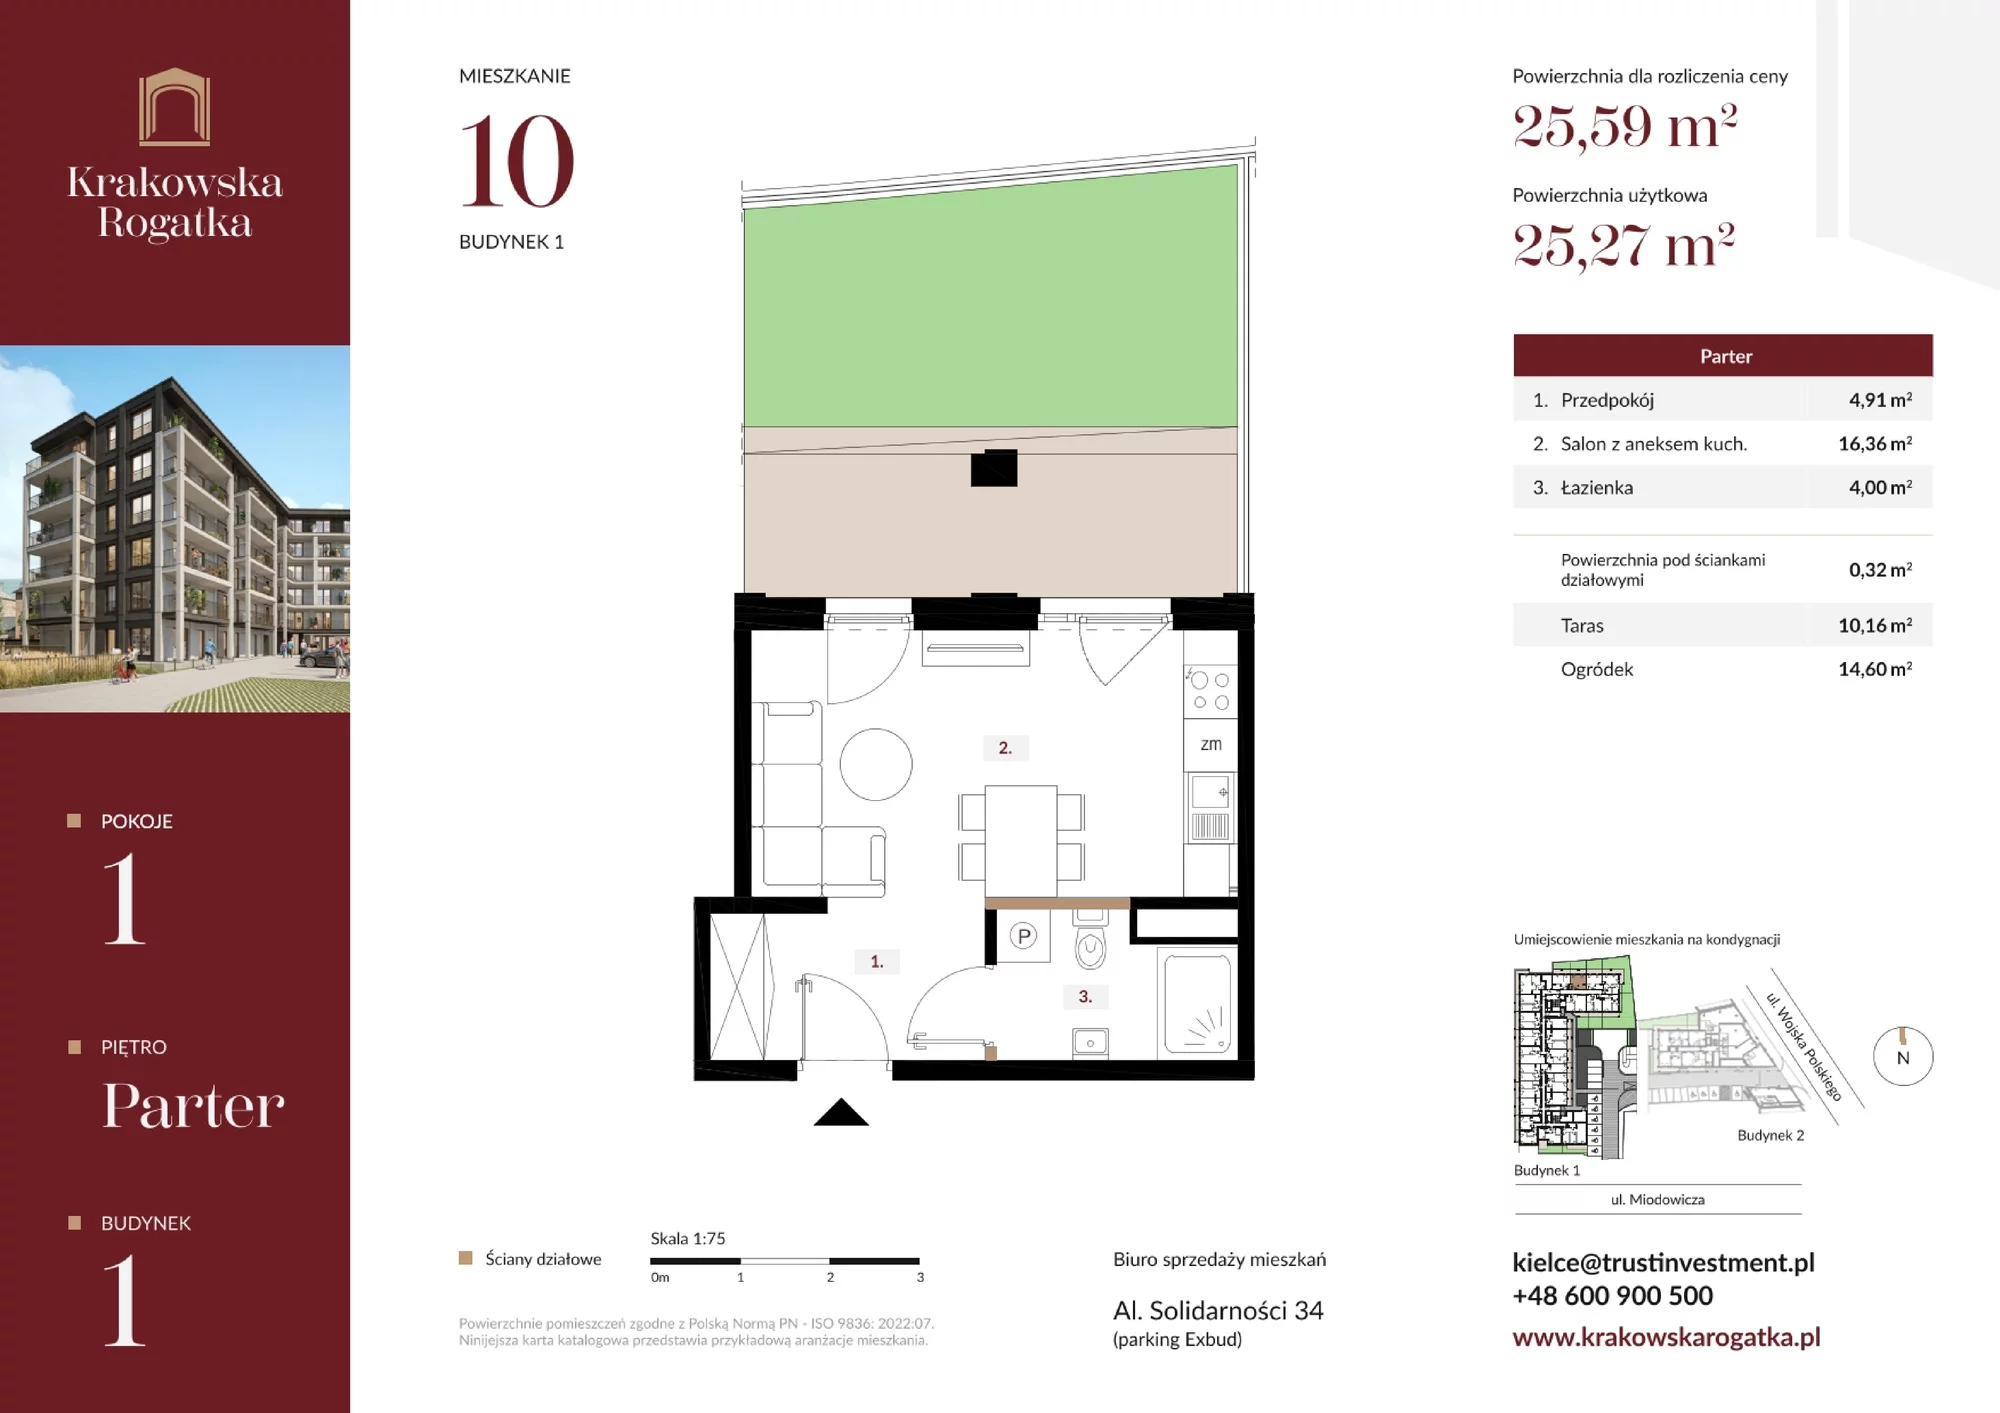 Mieszkanie 25,59 m², parter, oferta nr Budynek 1 Mieszkanie 10, Krakowska Rogatka, Kielce, ul. Miodowicza 1